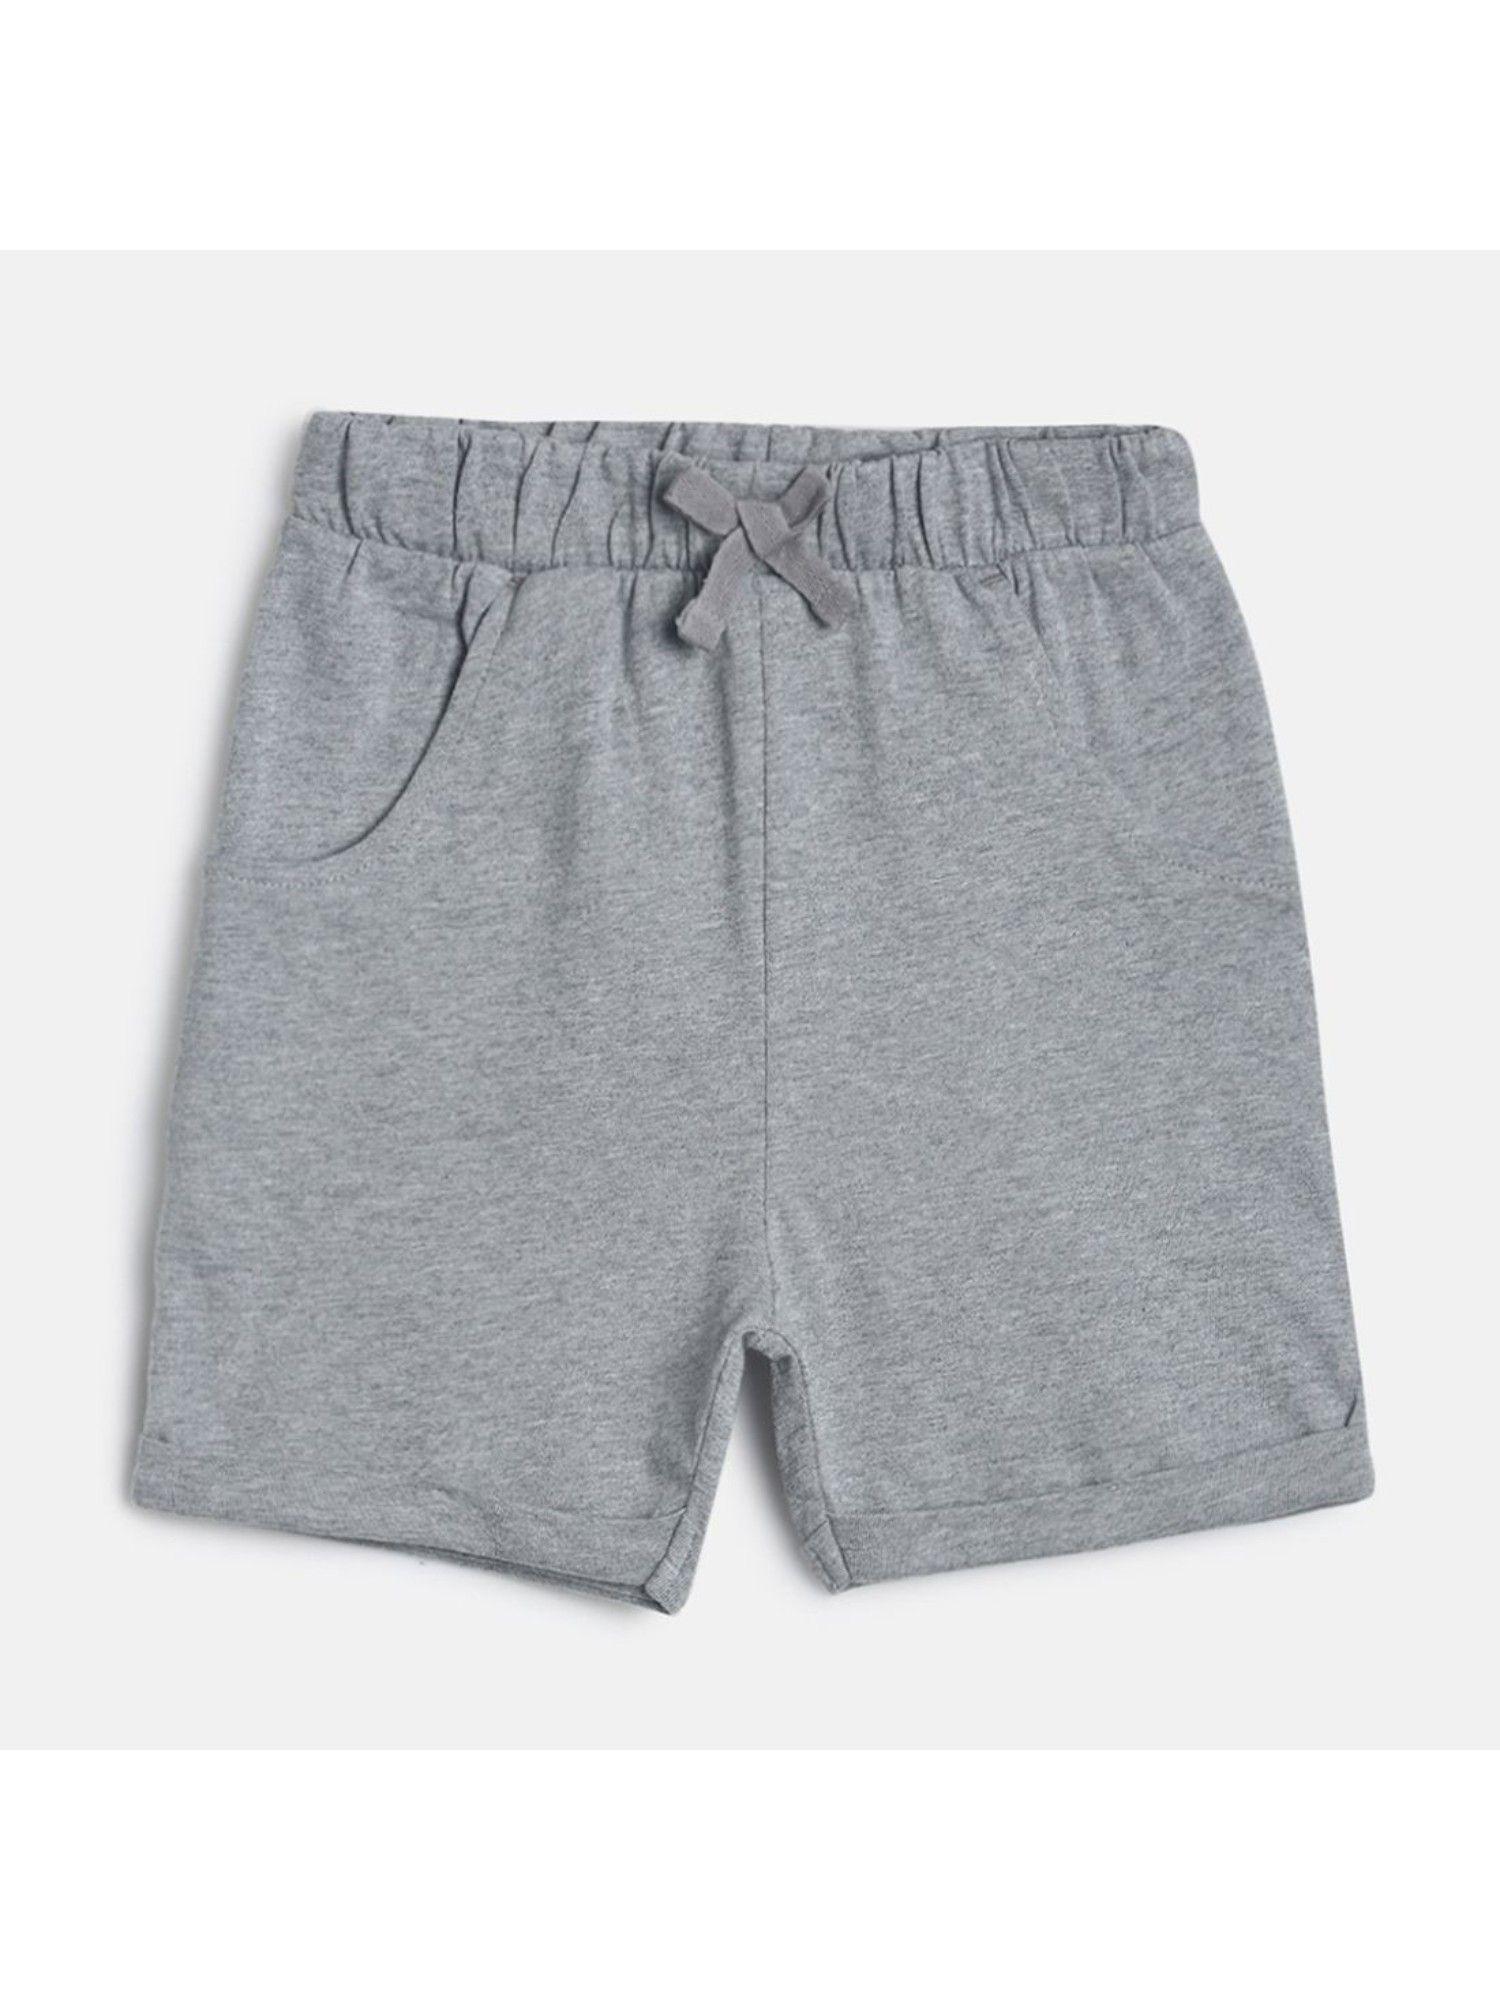 kids-girls-grey-shorts